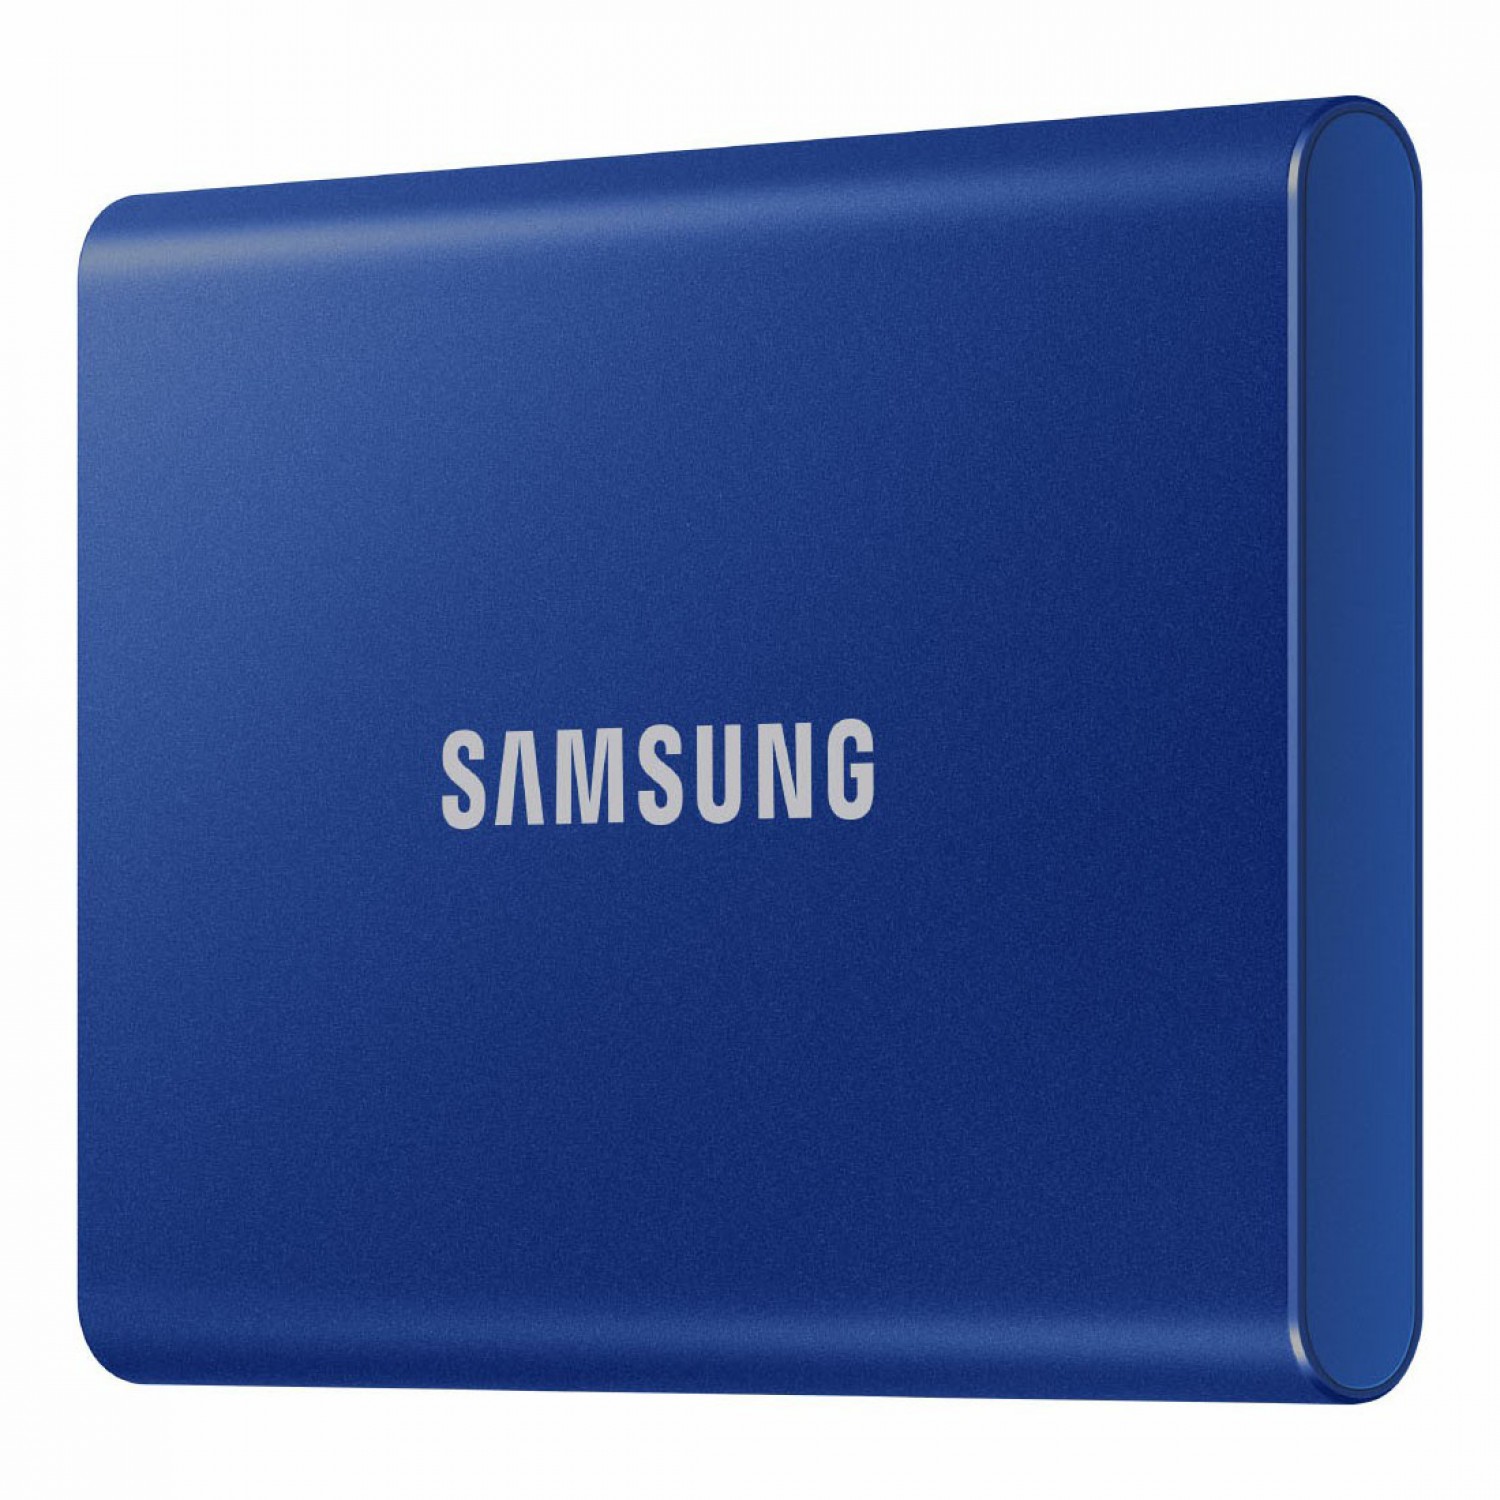 حافظه اس اس دی اکسترنال SAMSUNG T7 500GB - Indigo Blue